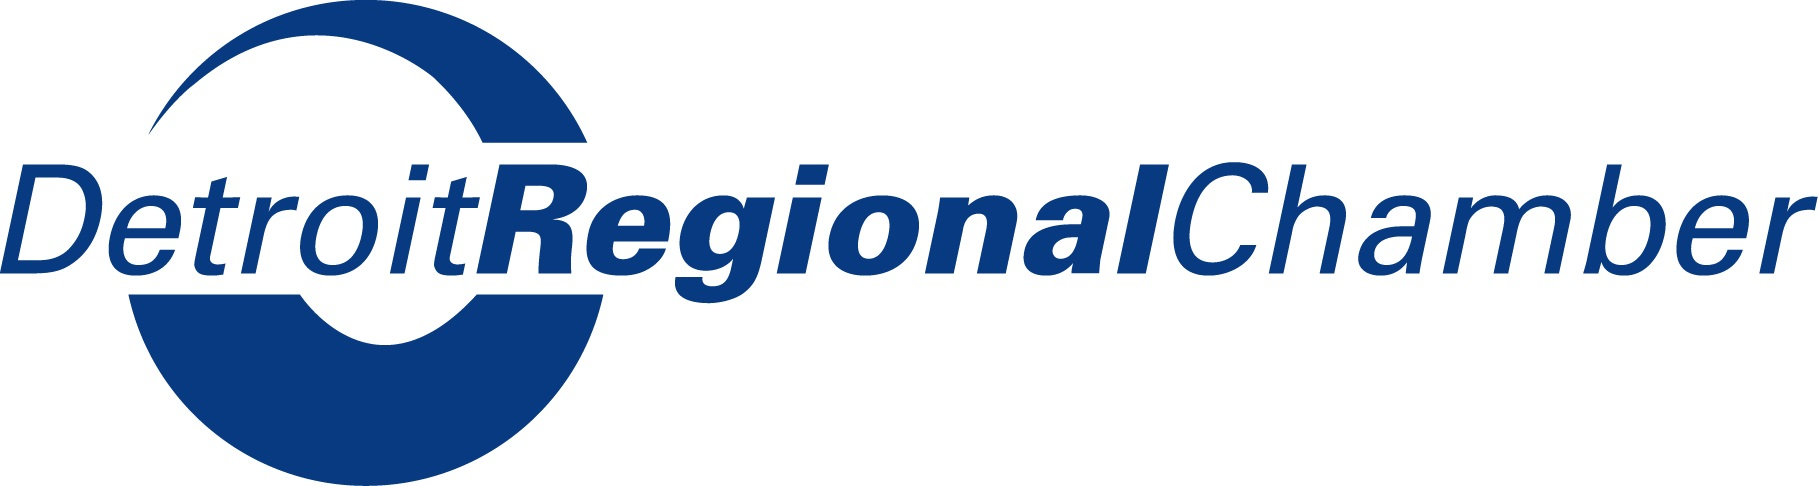 Detroit Regional Chamber Company Logo